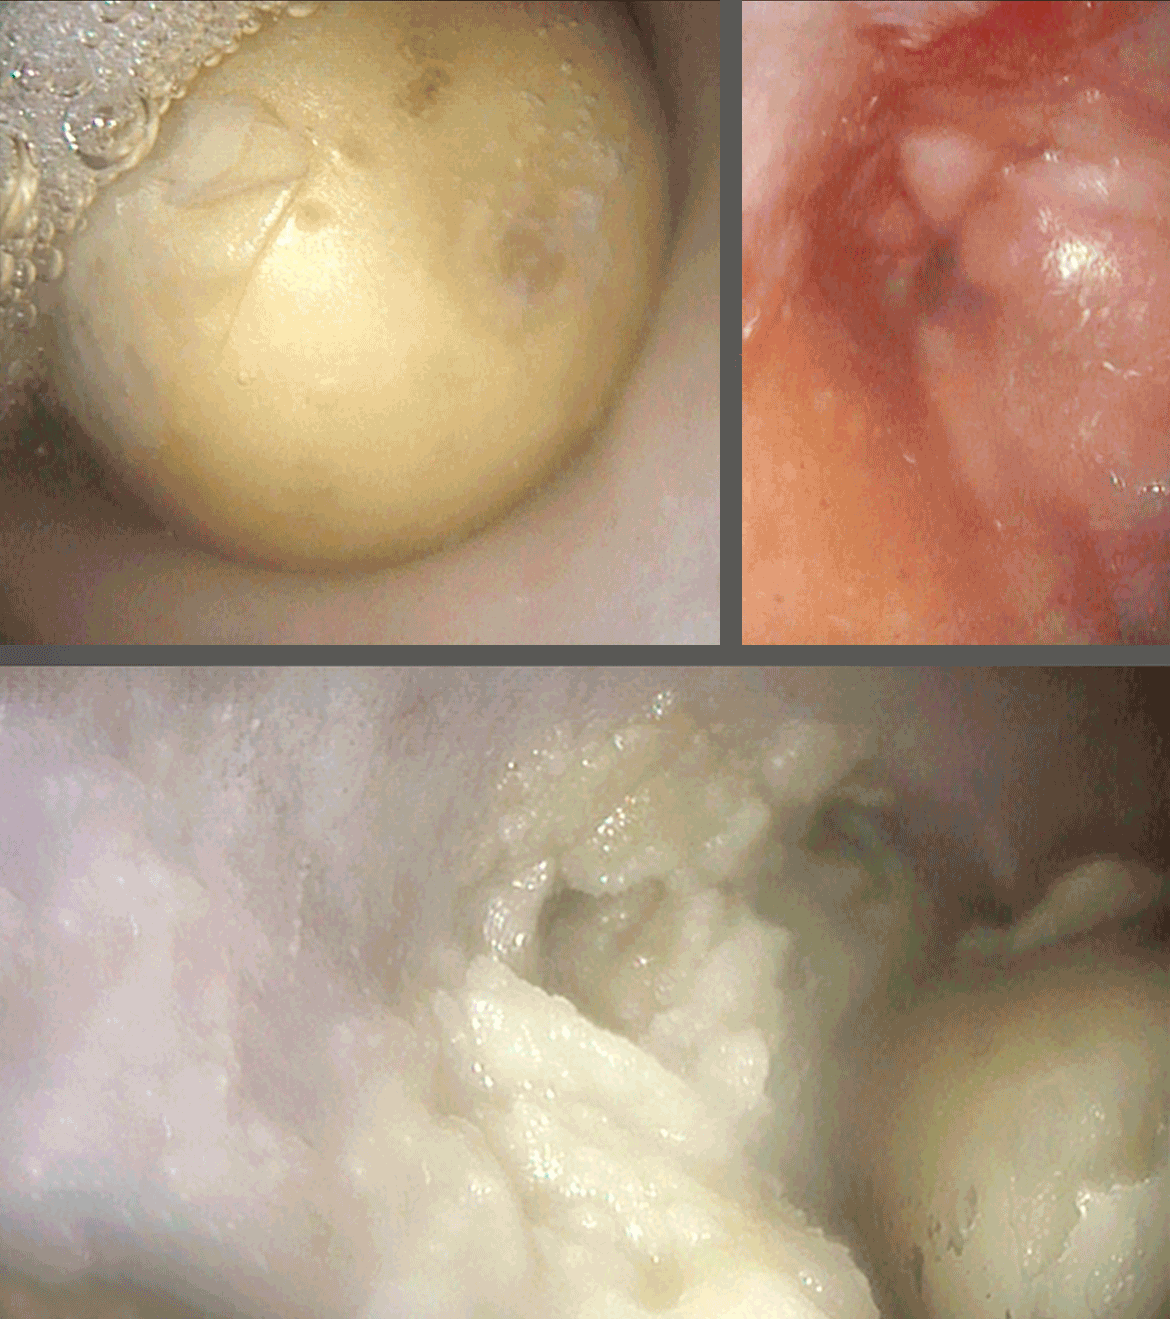 Verschluckte Kartoffel steckt in der Speiseröhre 3 verschiedene Bilder zeigen den Fremdkörper der in der Speiseröhre feststeckt.